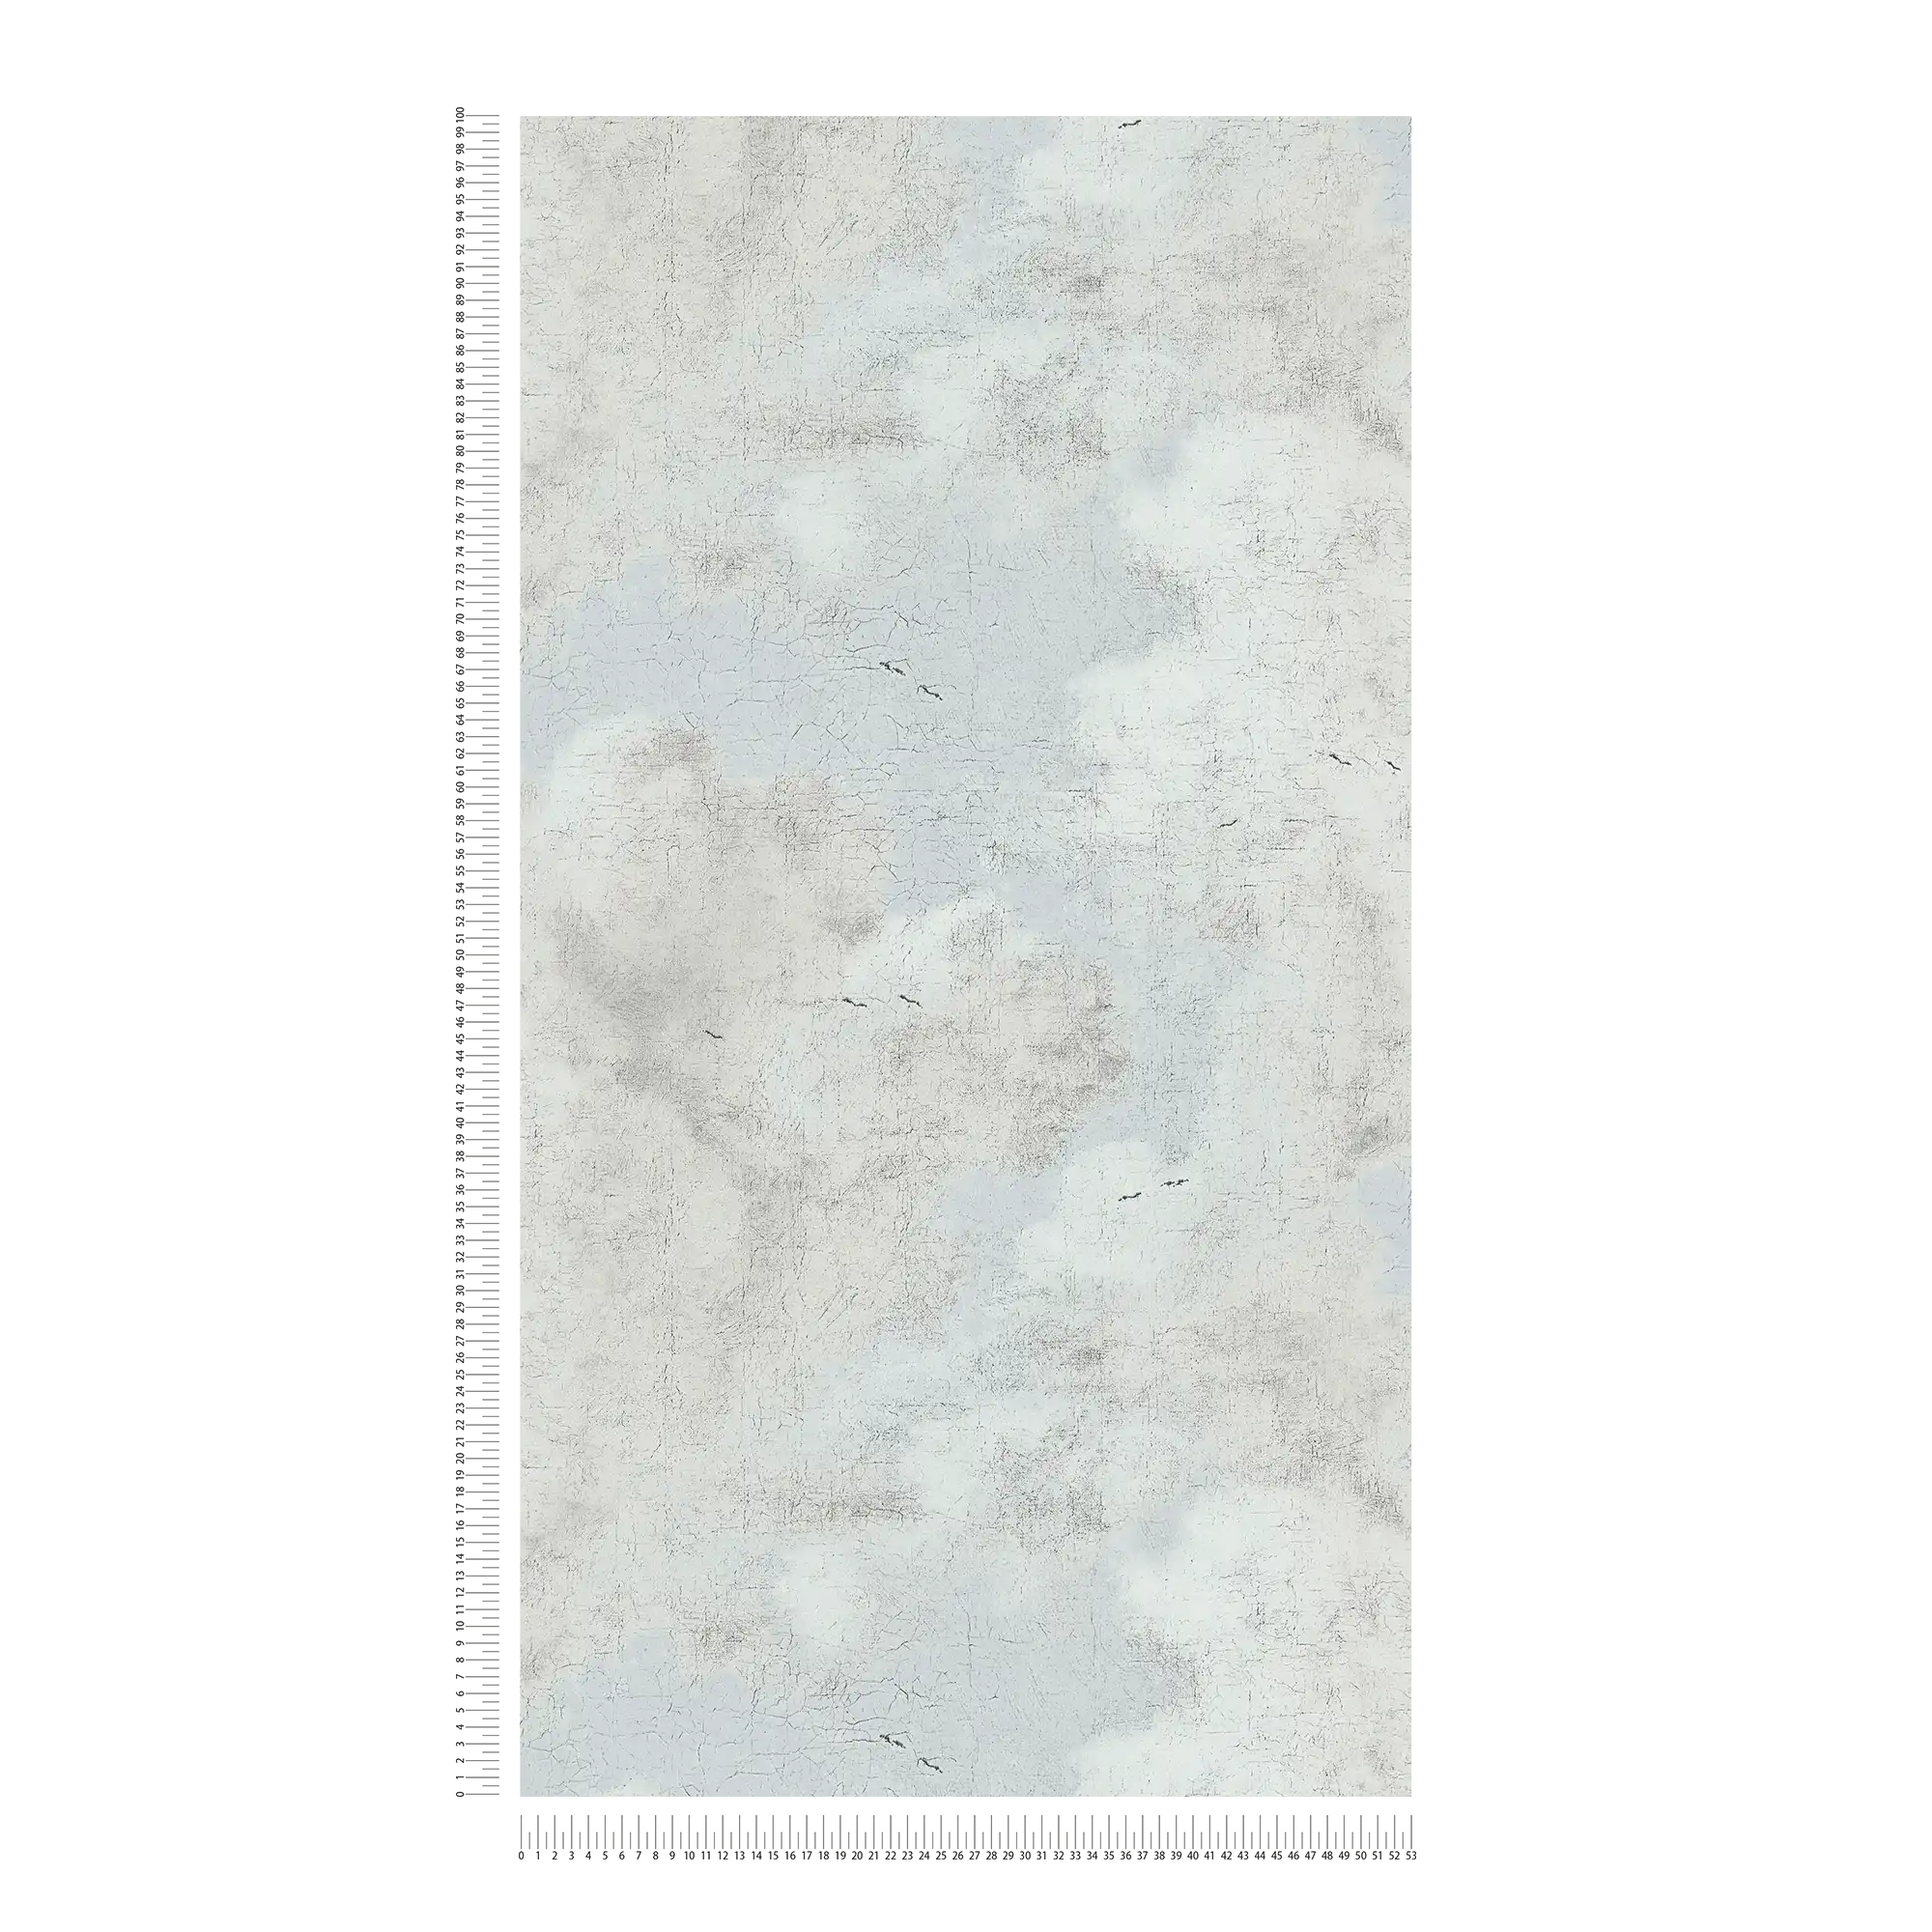             Papel pintado no tejido de estilo artístico Cielo de nubes - crema, blanco, azul
        